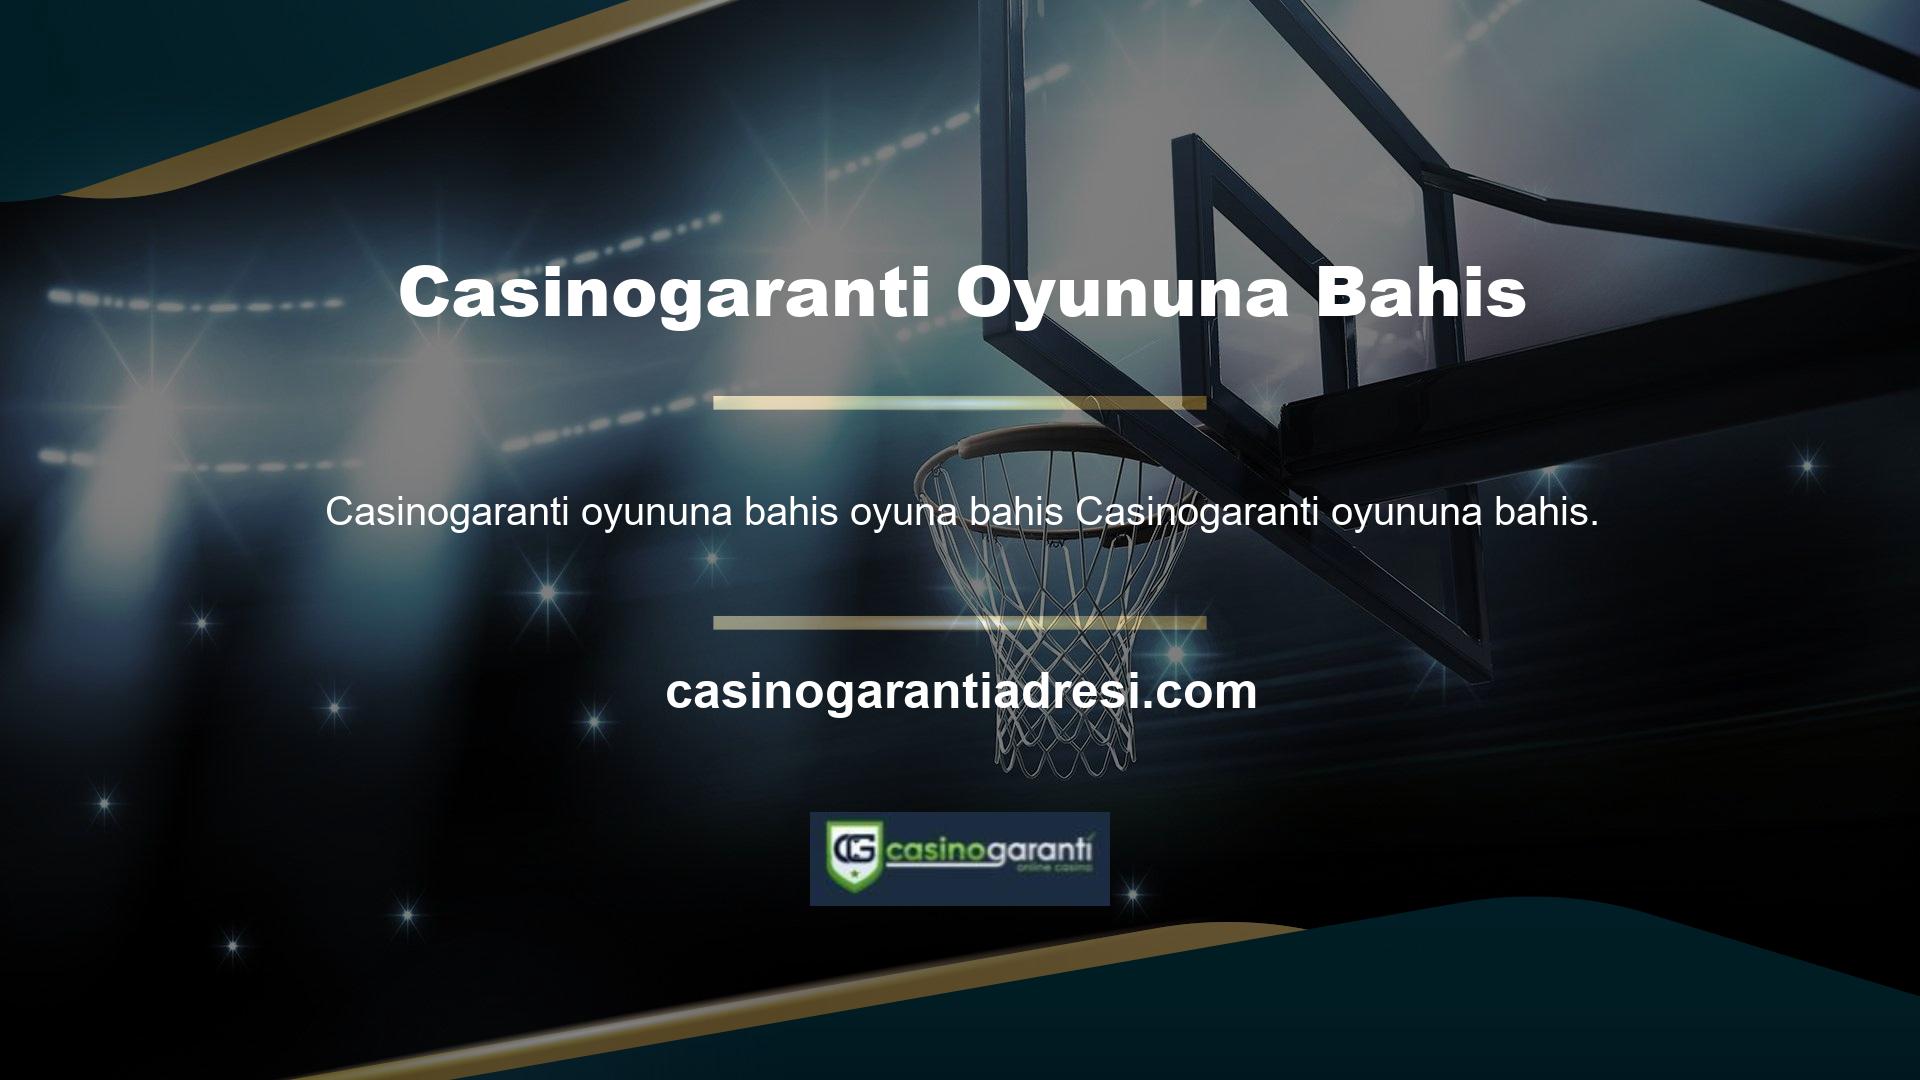 Casinogaranti web sitesinde farklı spor dalında canlı bahis, tek maç seçenekleri, grup bahisleri ve sistem bahisleri sunulmaktadır